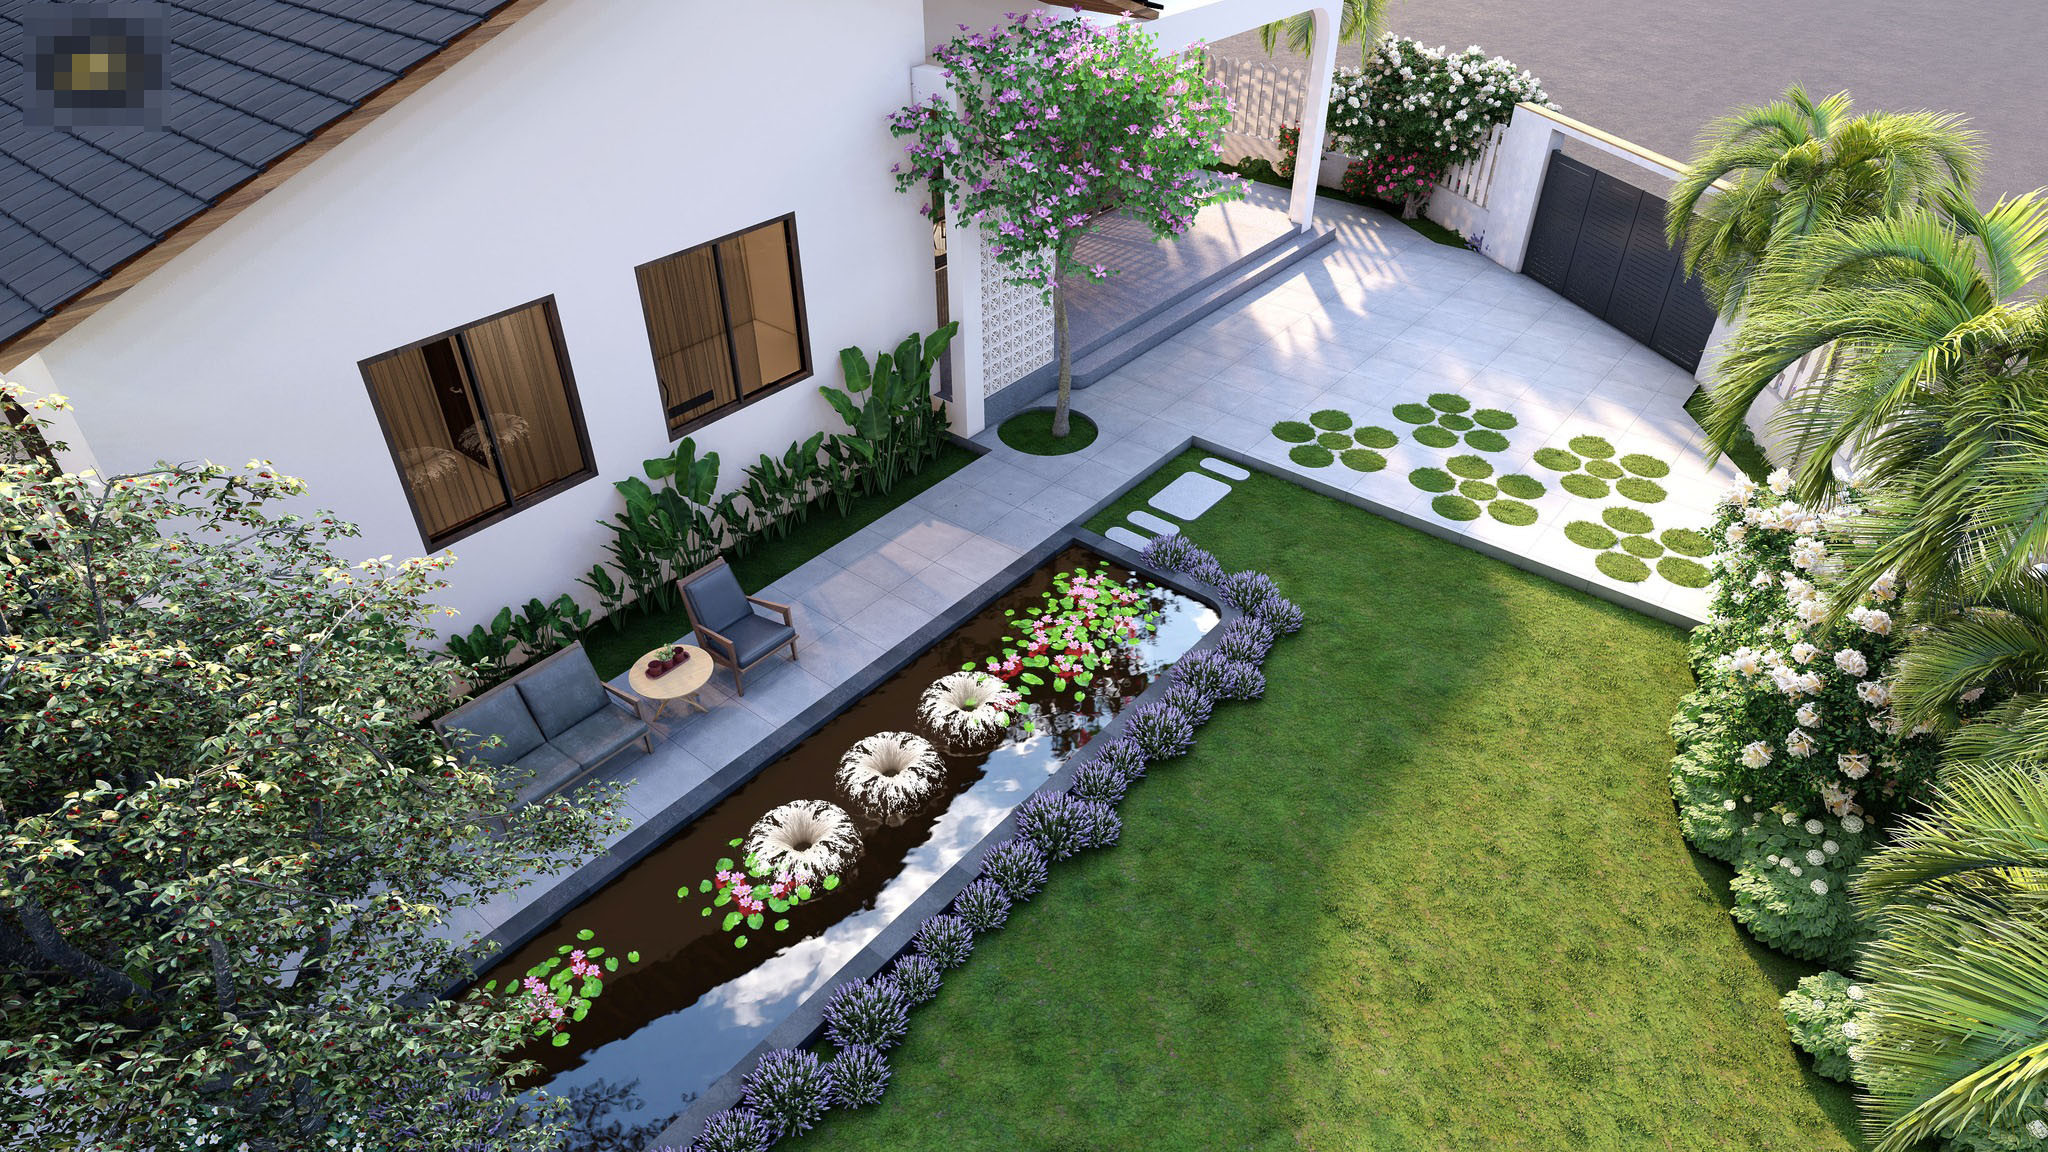 Mẫu sân vườn nhà cấp 4 hiện đại, đơn giản - 2BDS Nhà đẹp